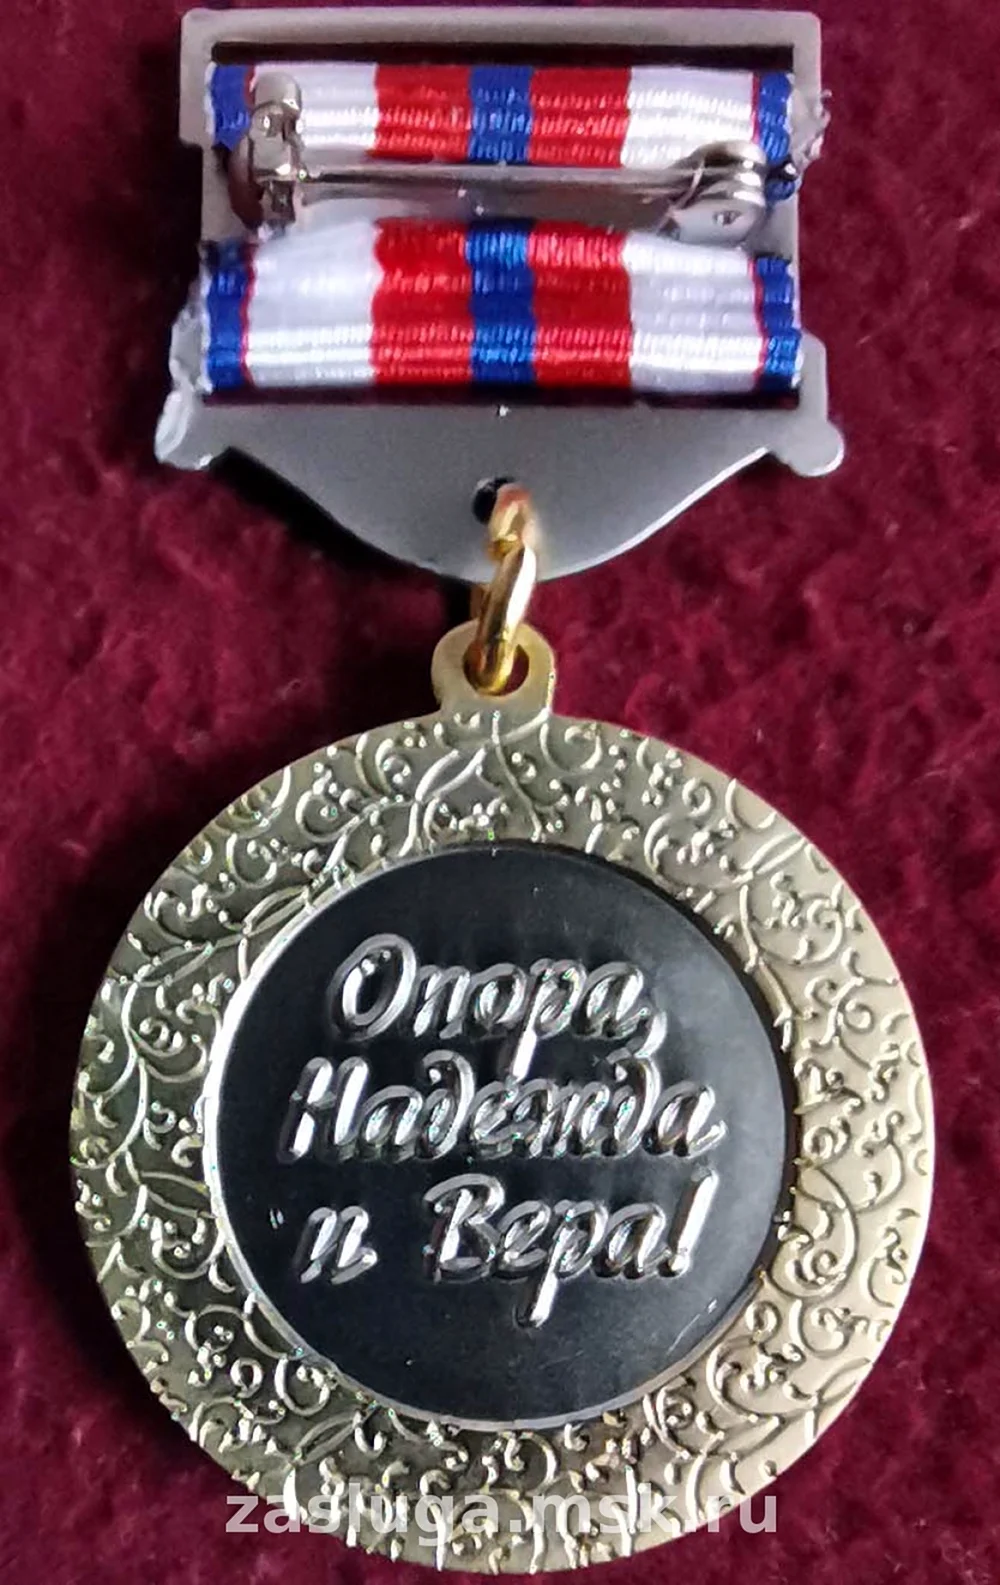 Медаль жена офицера опора Надежда и Вера